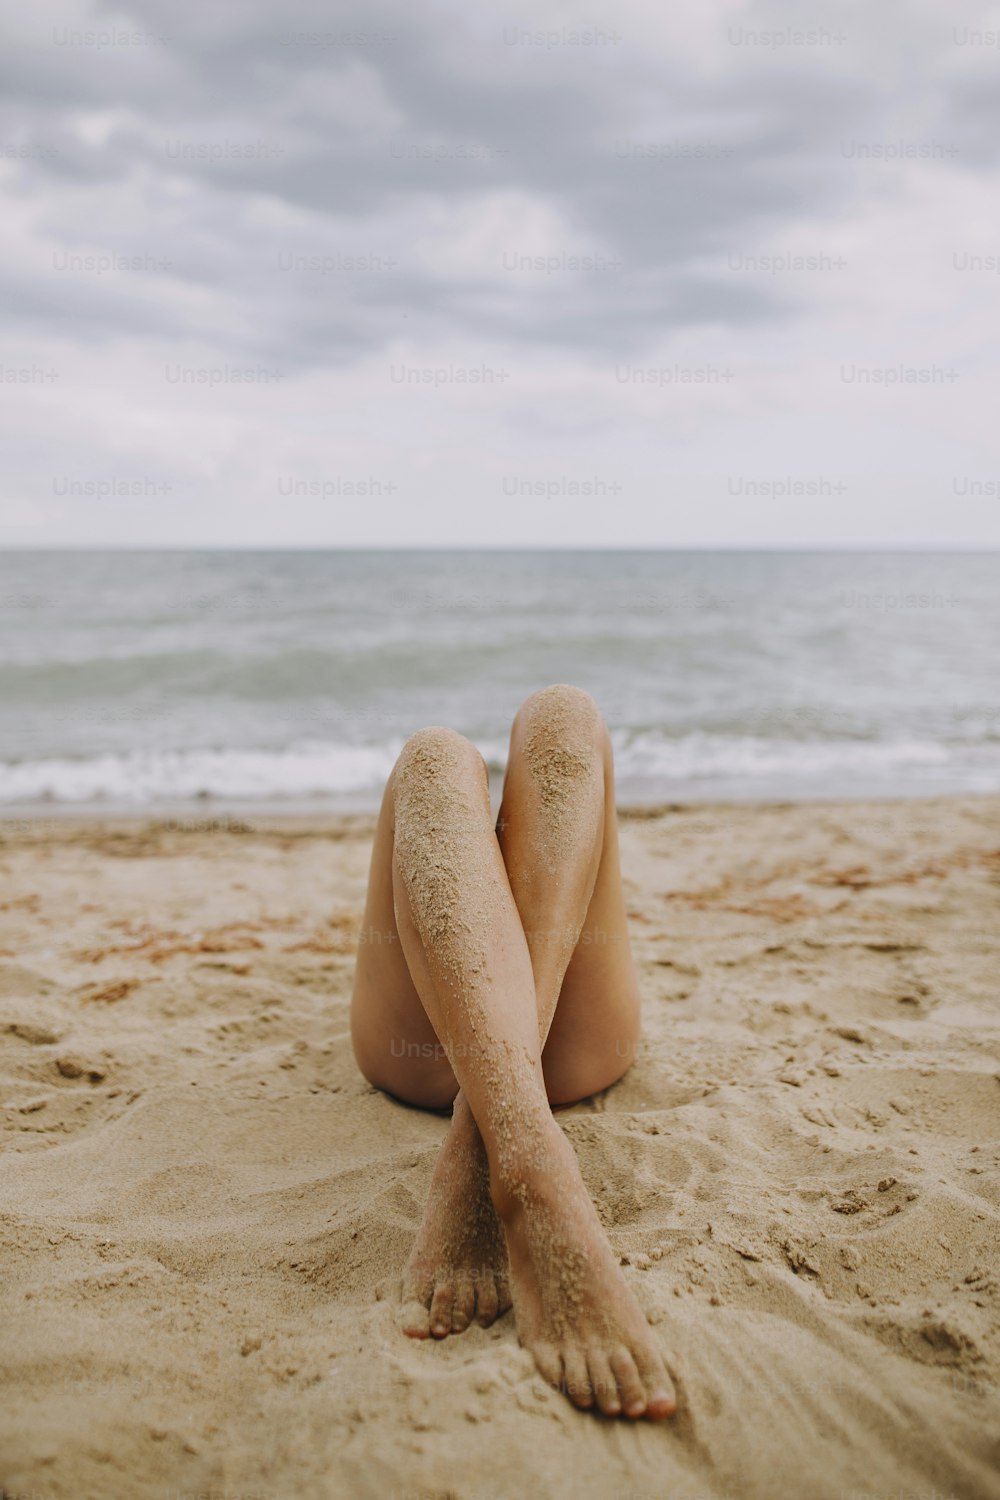 Piernas bronceadas femeninas con arena sobre piel lisa primer plano en la playa. Hermosa imagen auténtica y creativa. Mujer joven relajándose en la orilla del mar. Veraneo. Cuidado de los pies